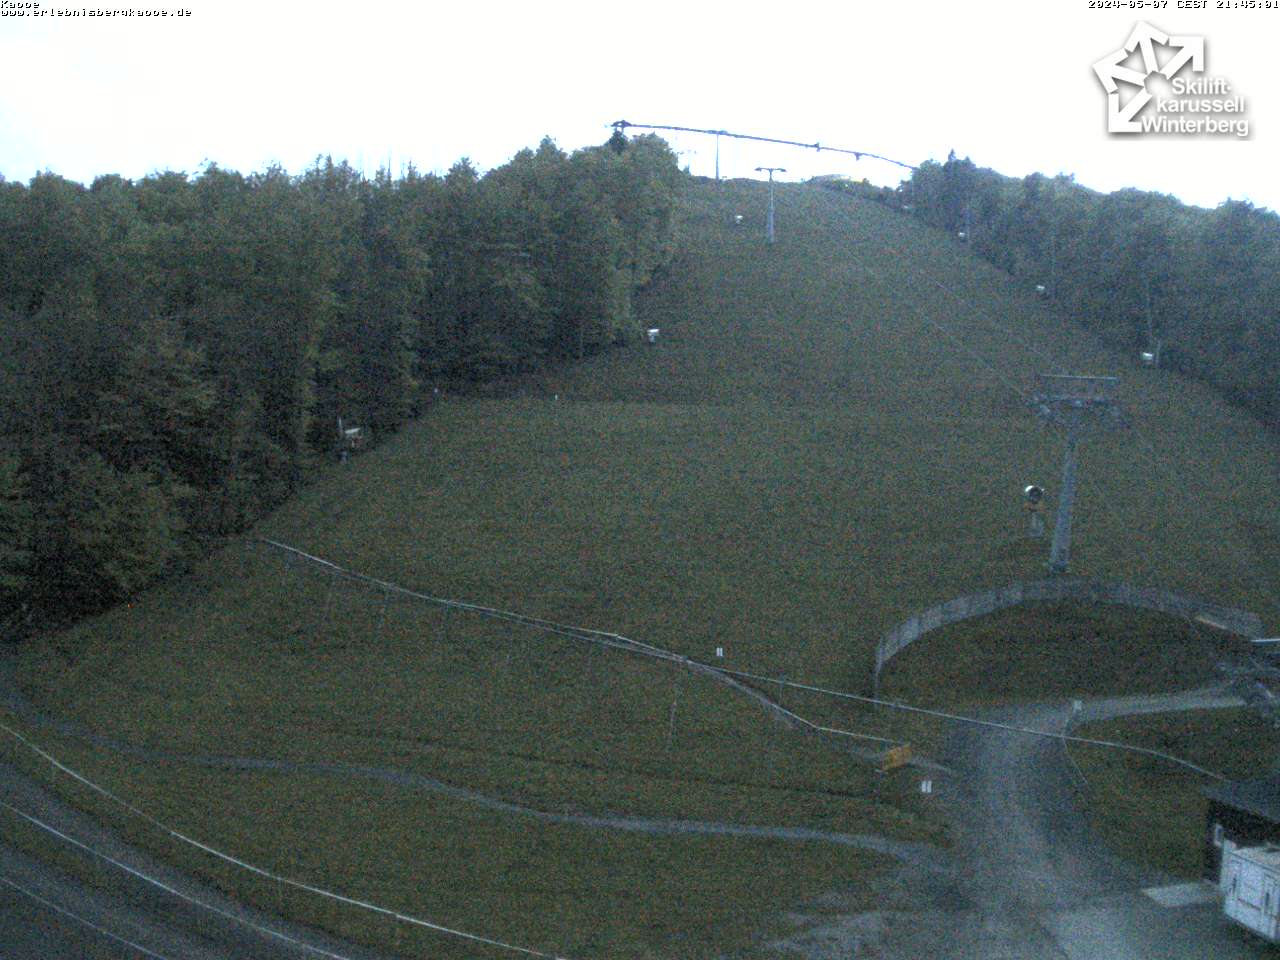 Webcam Kappe - Skiliftkarussell Winterberg